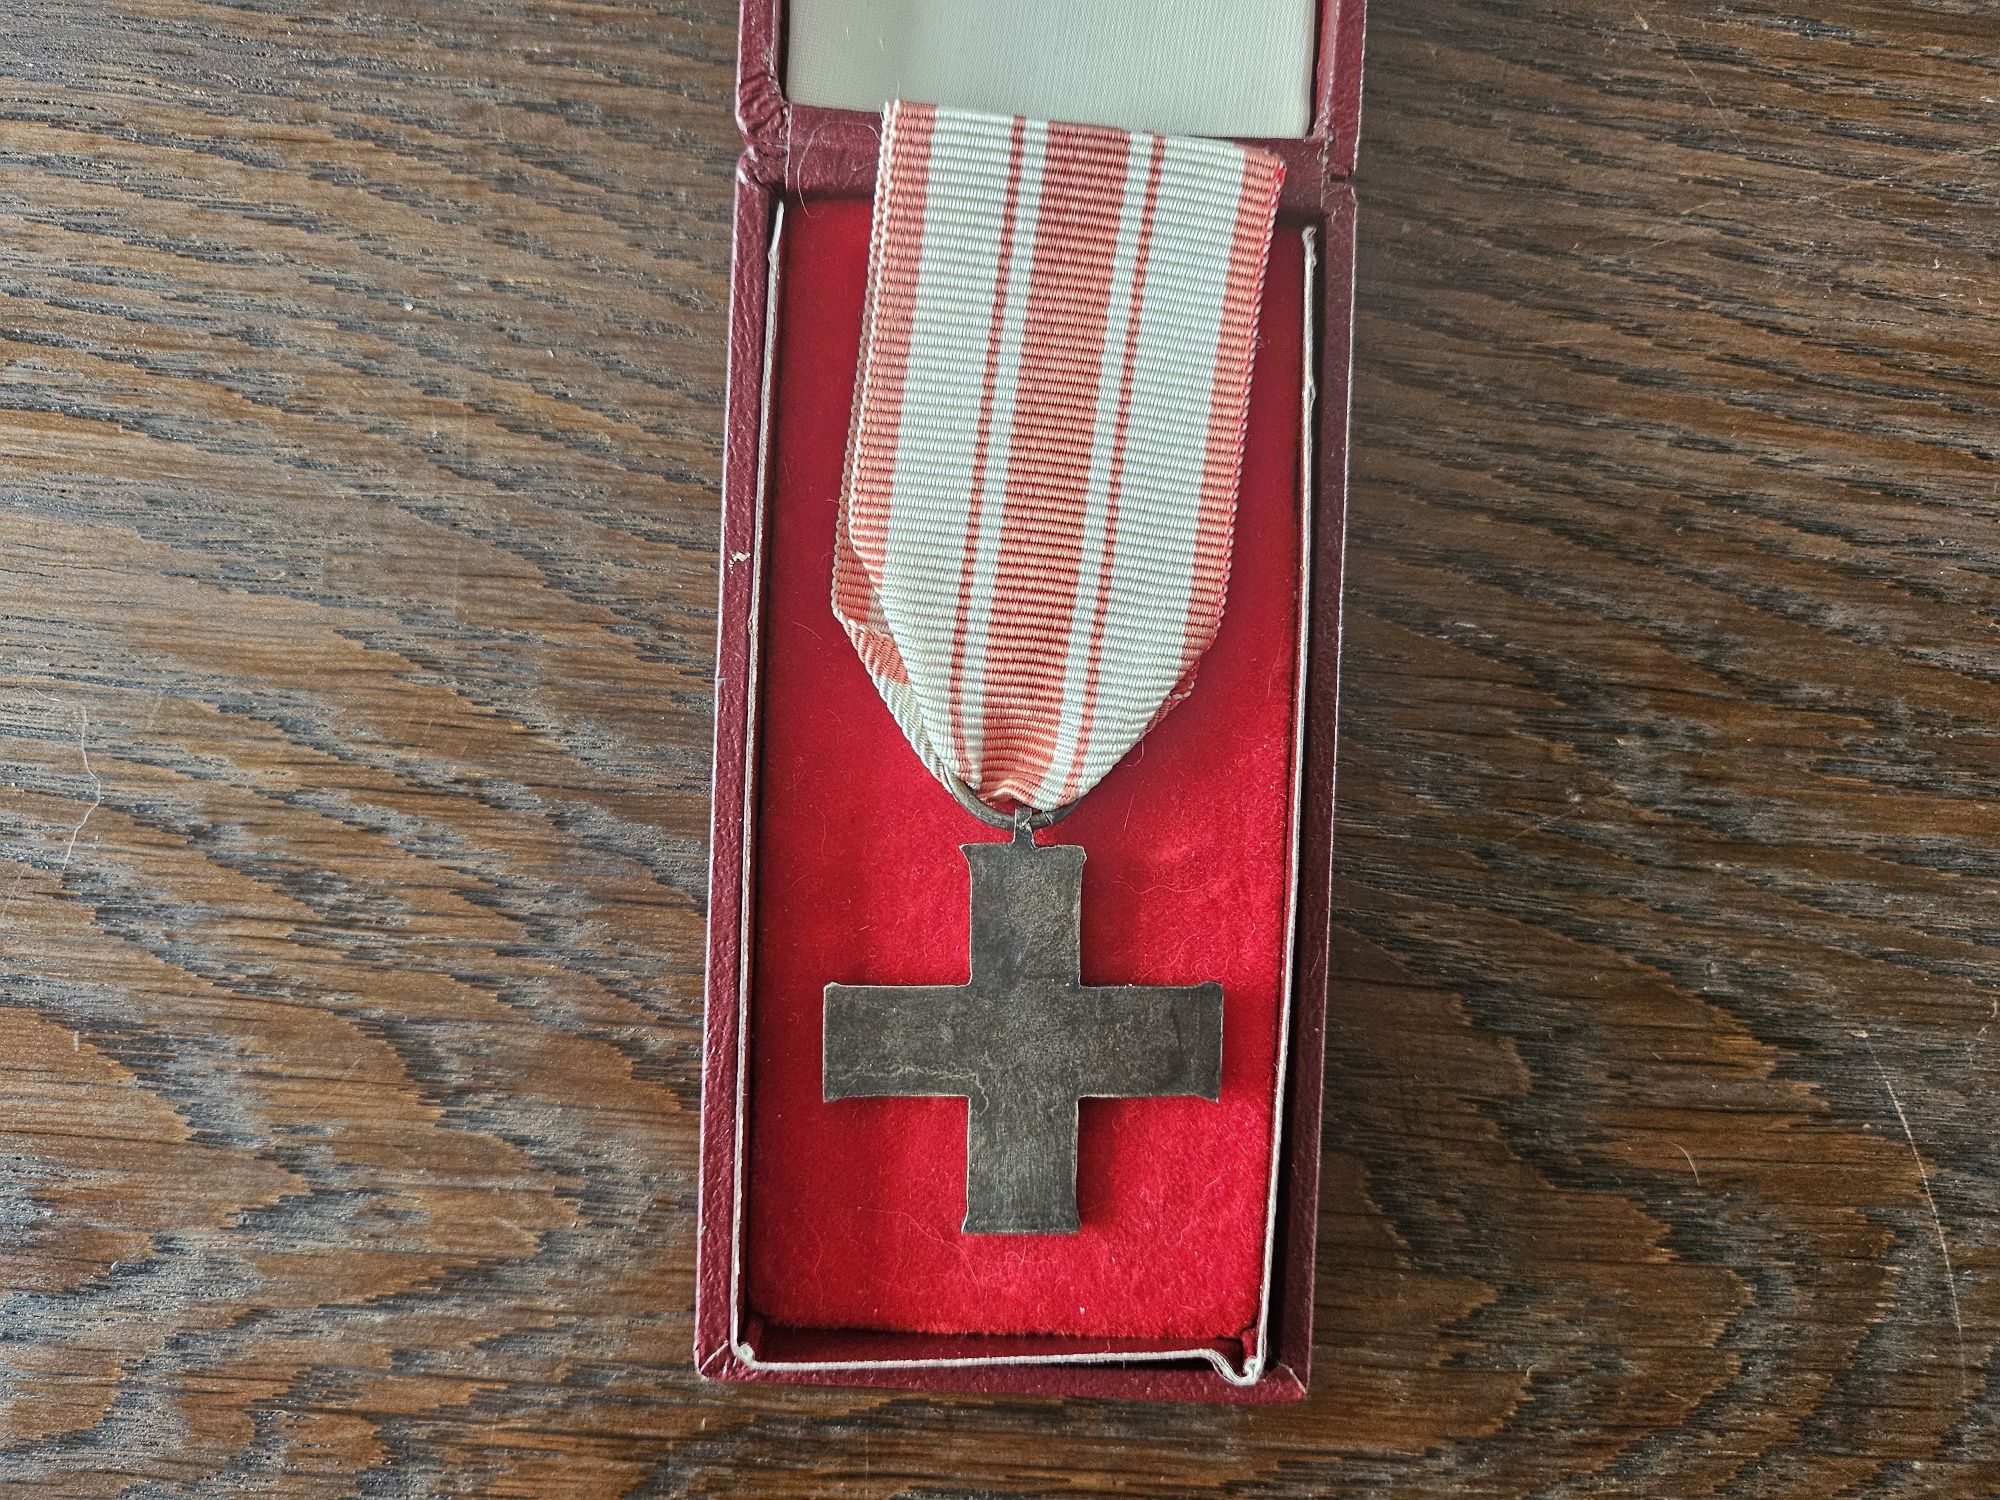 Krzyż Kampanii Wrześniowej